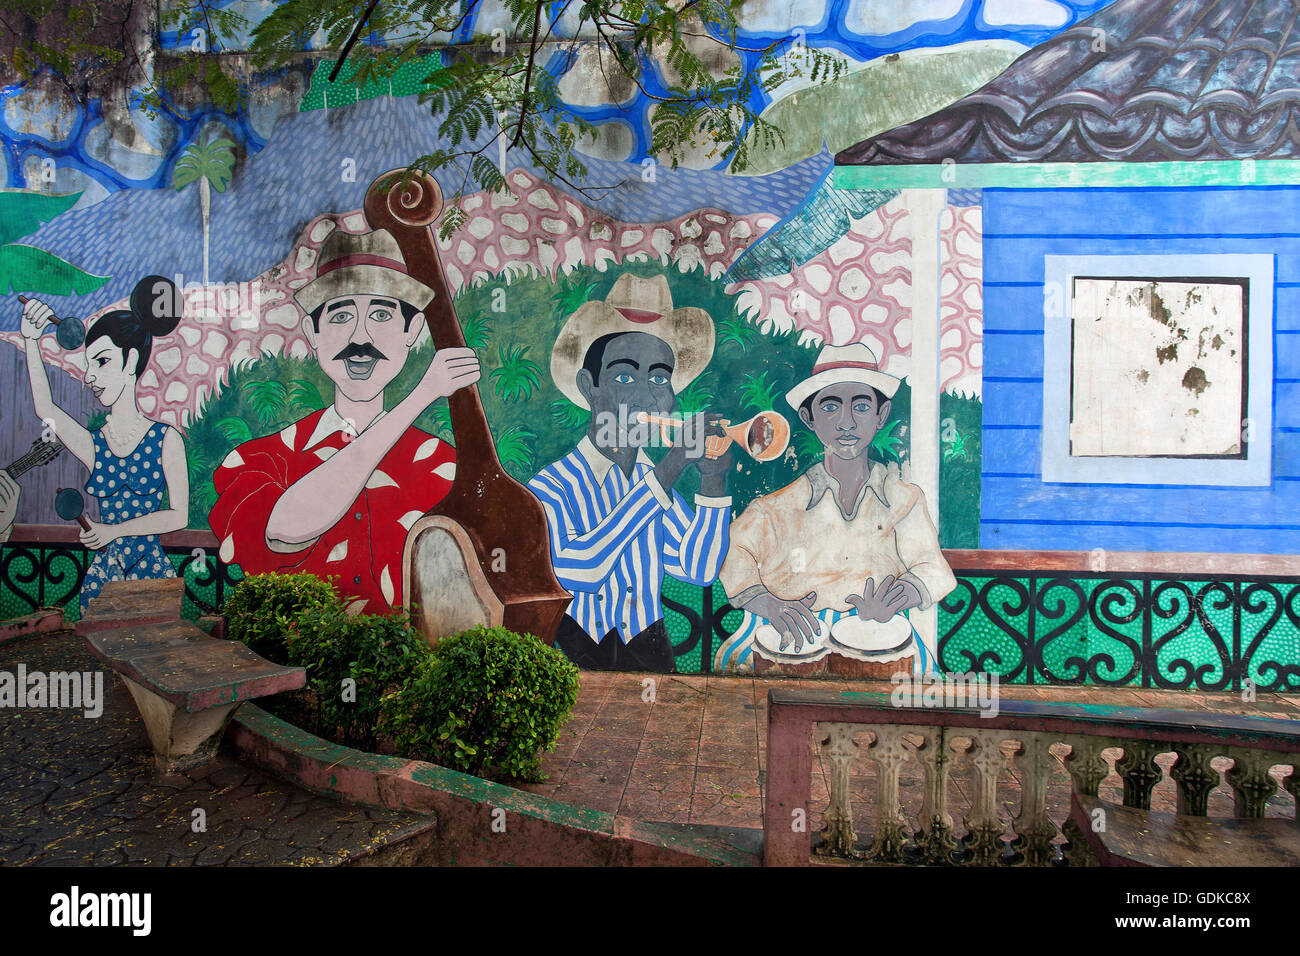 Bemalte Hauswand, Graffiti, Musikgruppe oder Band, Baracoa, Provinz Guantánamo, Kuba Stockfoto